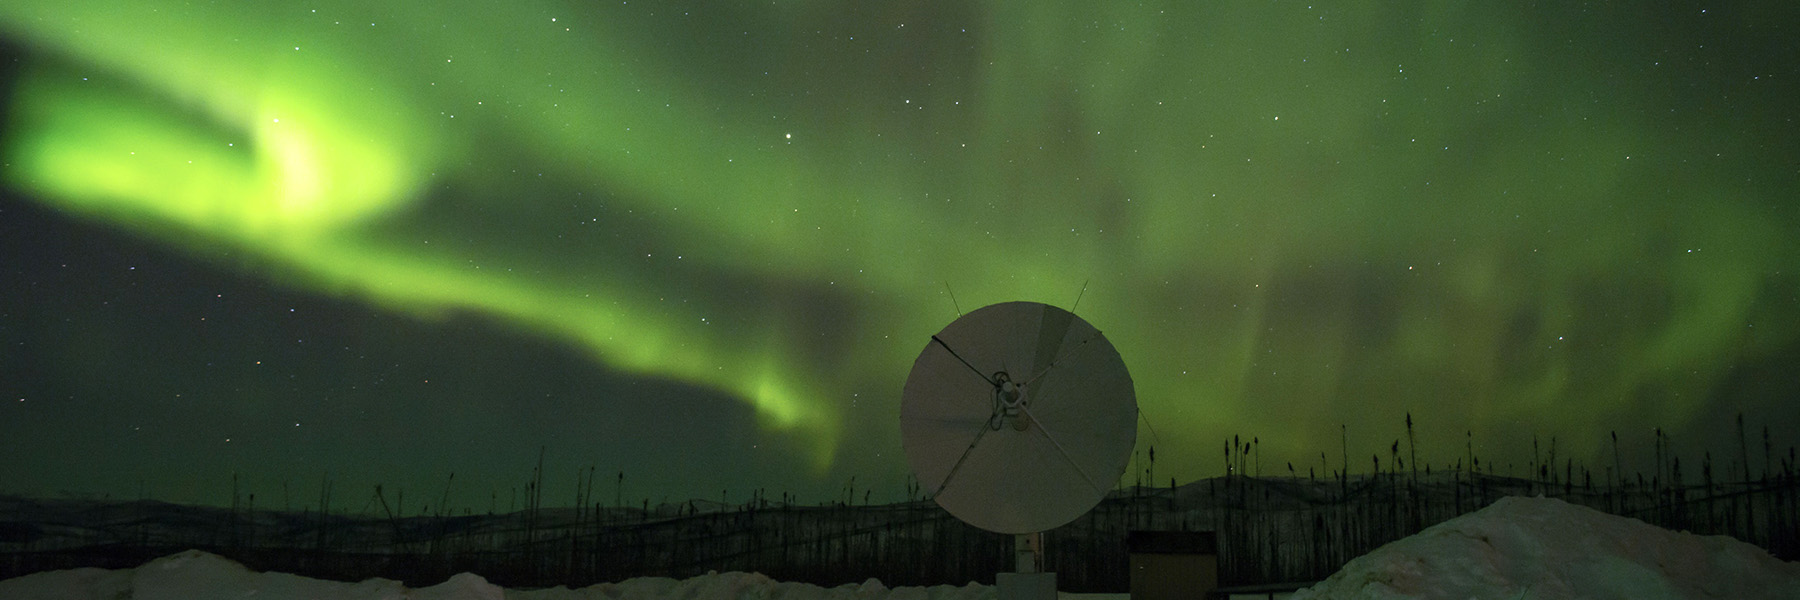 Scientific equipment and aurora borealis